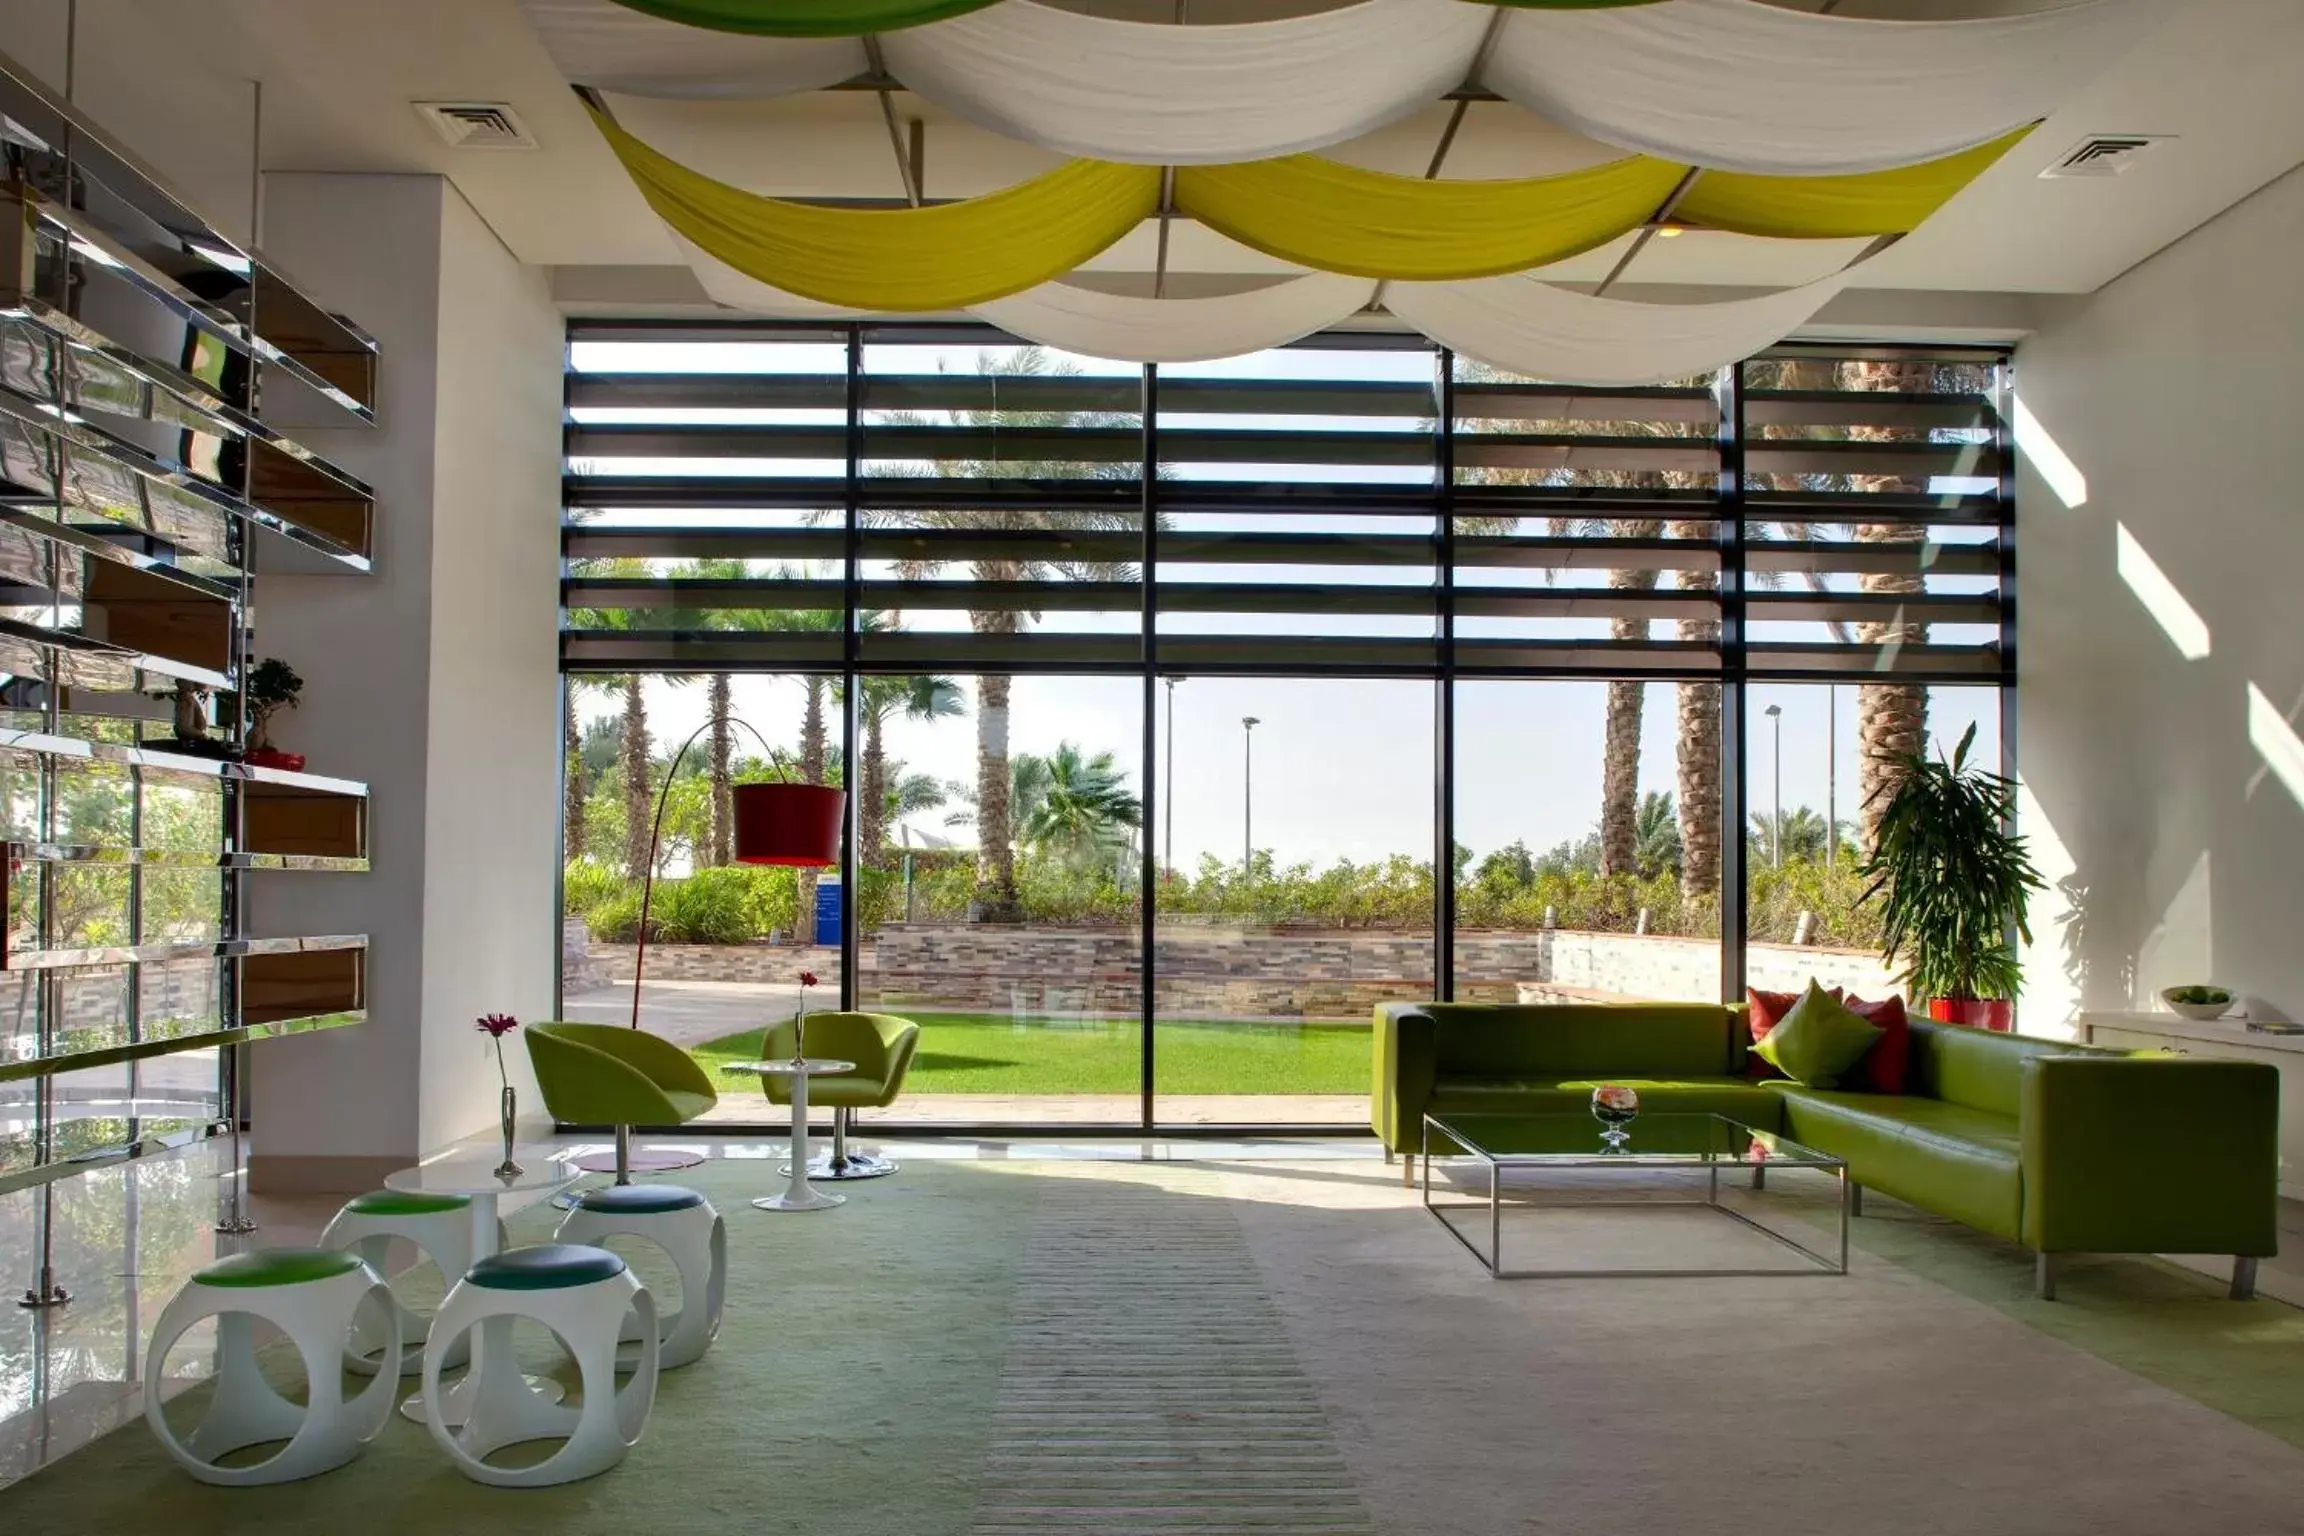 Lobby or reception in Park Inn by Radisson Abu Dhabi Yas Island